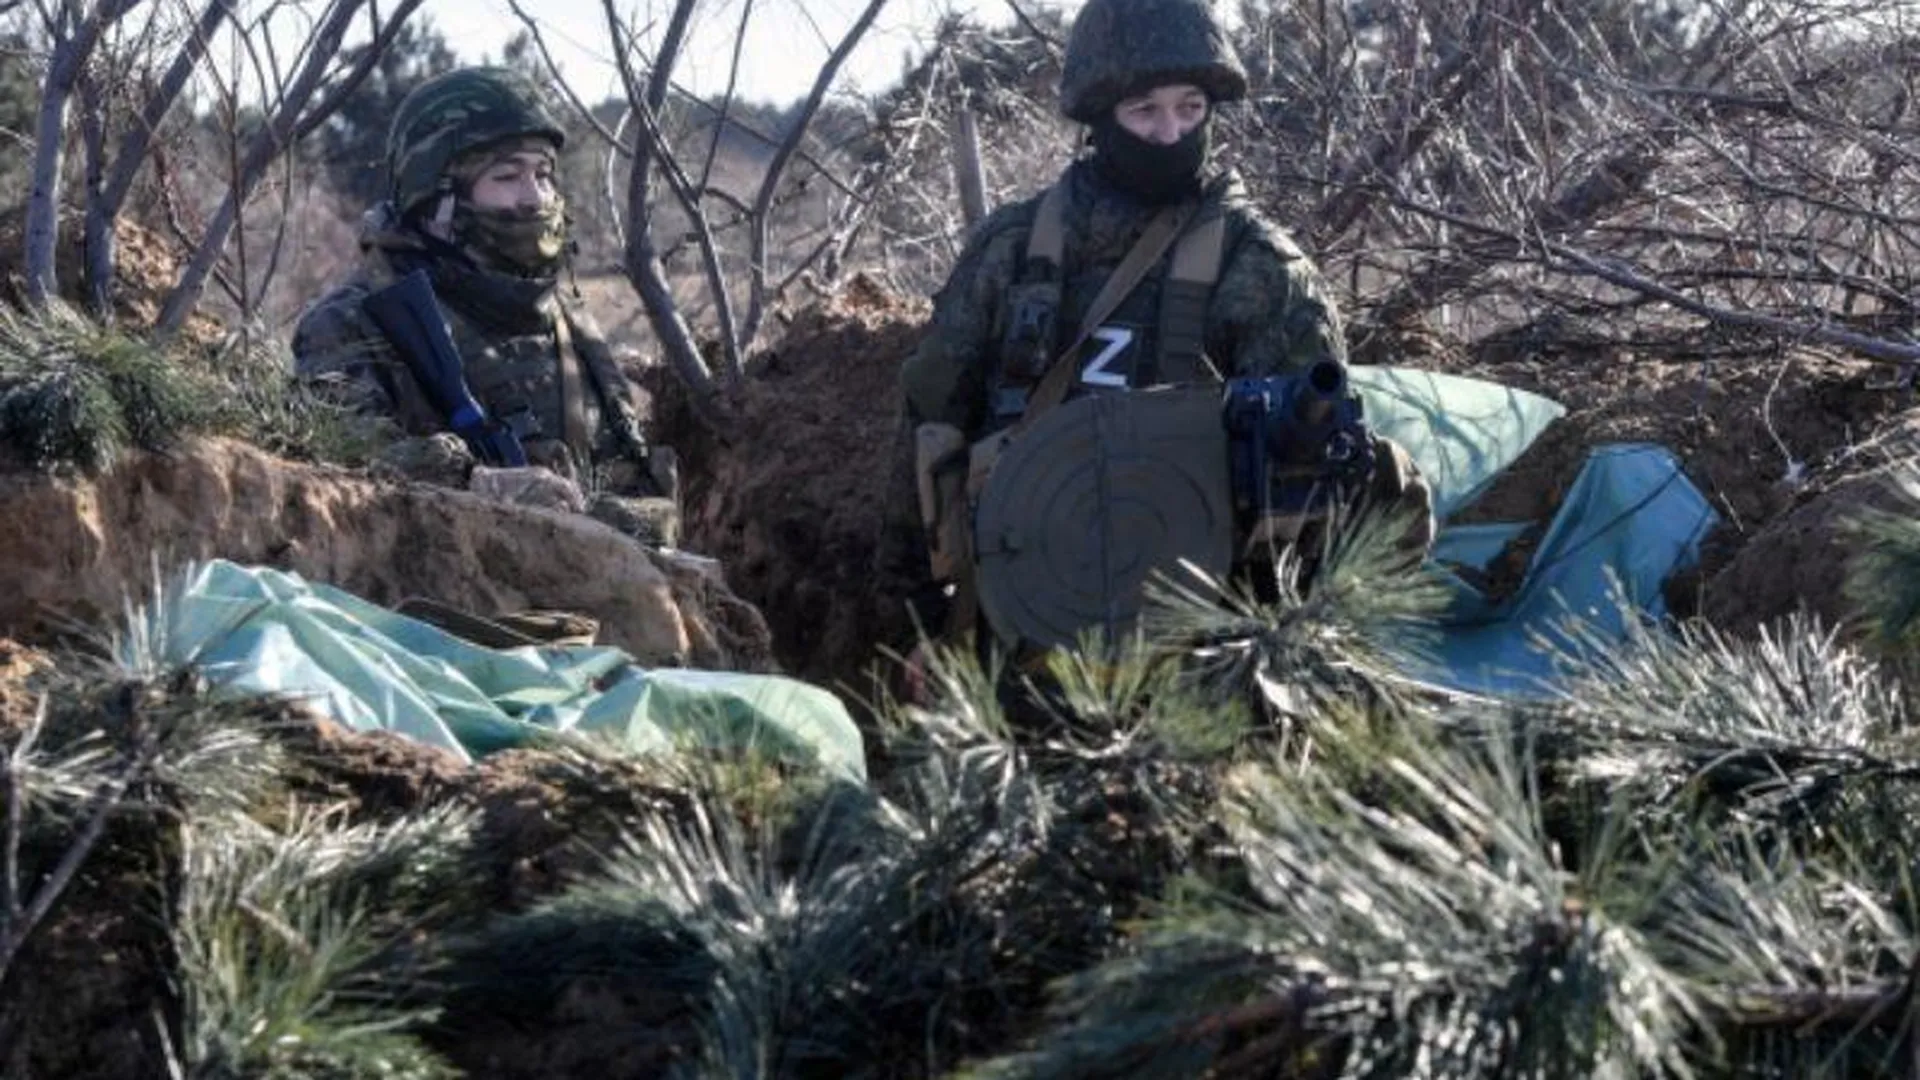 Южная группировка заняла более выгодные позиции на Донецком направлении